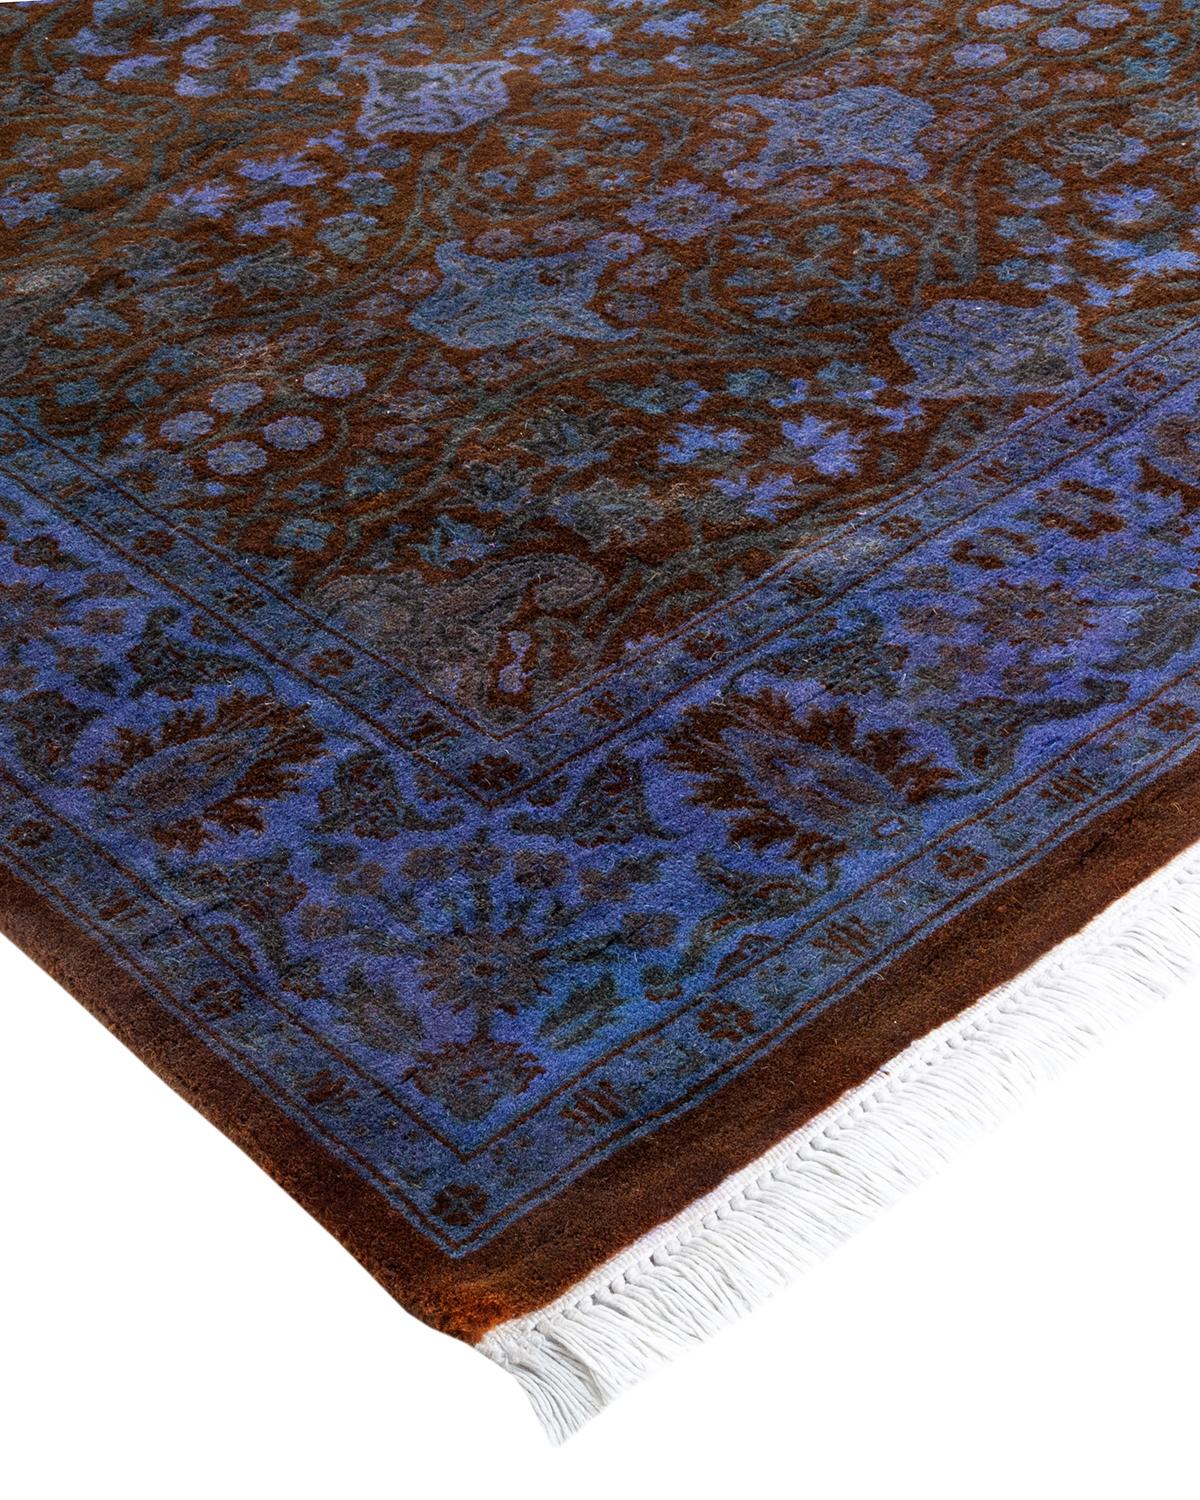 Vibrance-Teppiche sind der Inbegriff von Klassik mit Pfiff: Traditionelle Muster, die in leuchtenden Farben gefärbt sind. Jeder handgeknüpfte Teppich wird mit einem 100 % natürlichen botanischen Farbstoff gewaschen, der verborgene Nuancen in den